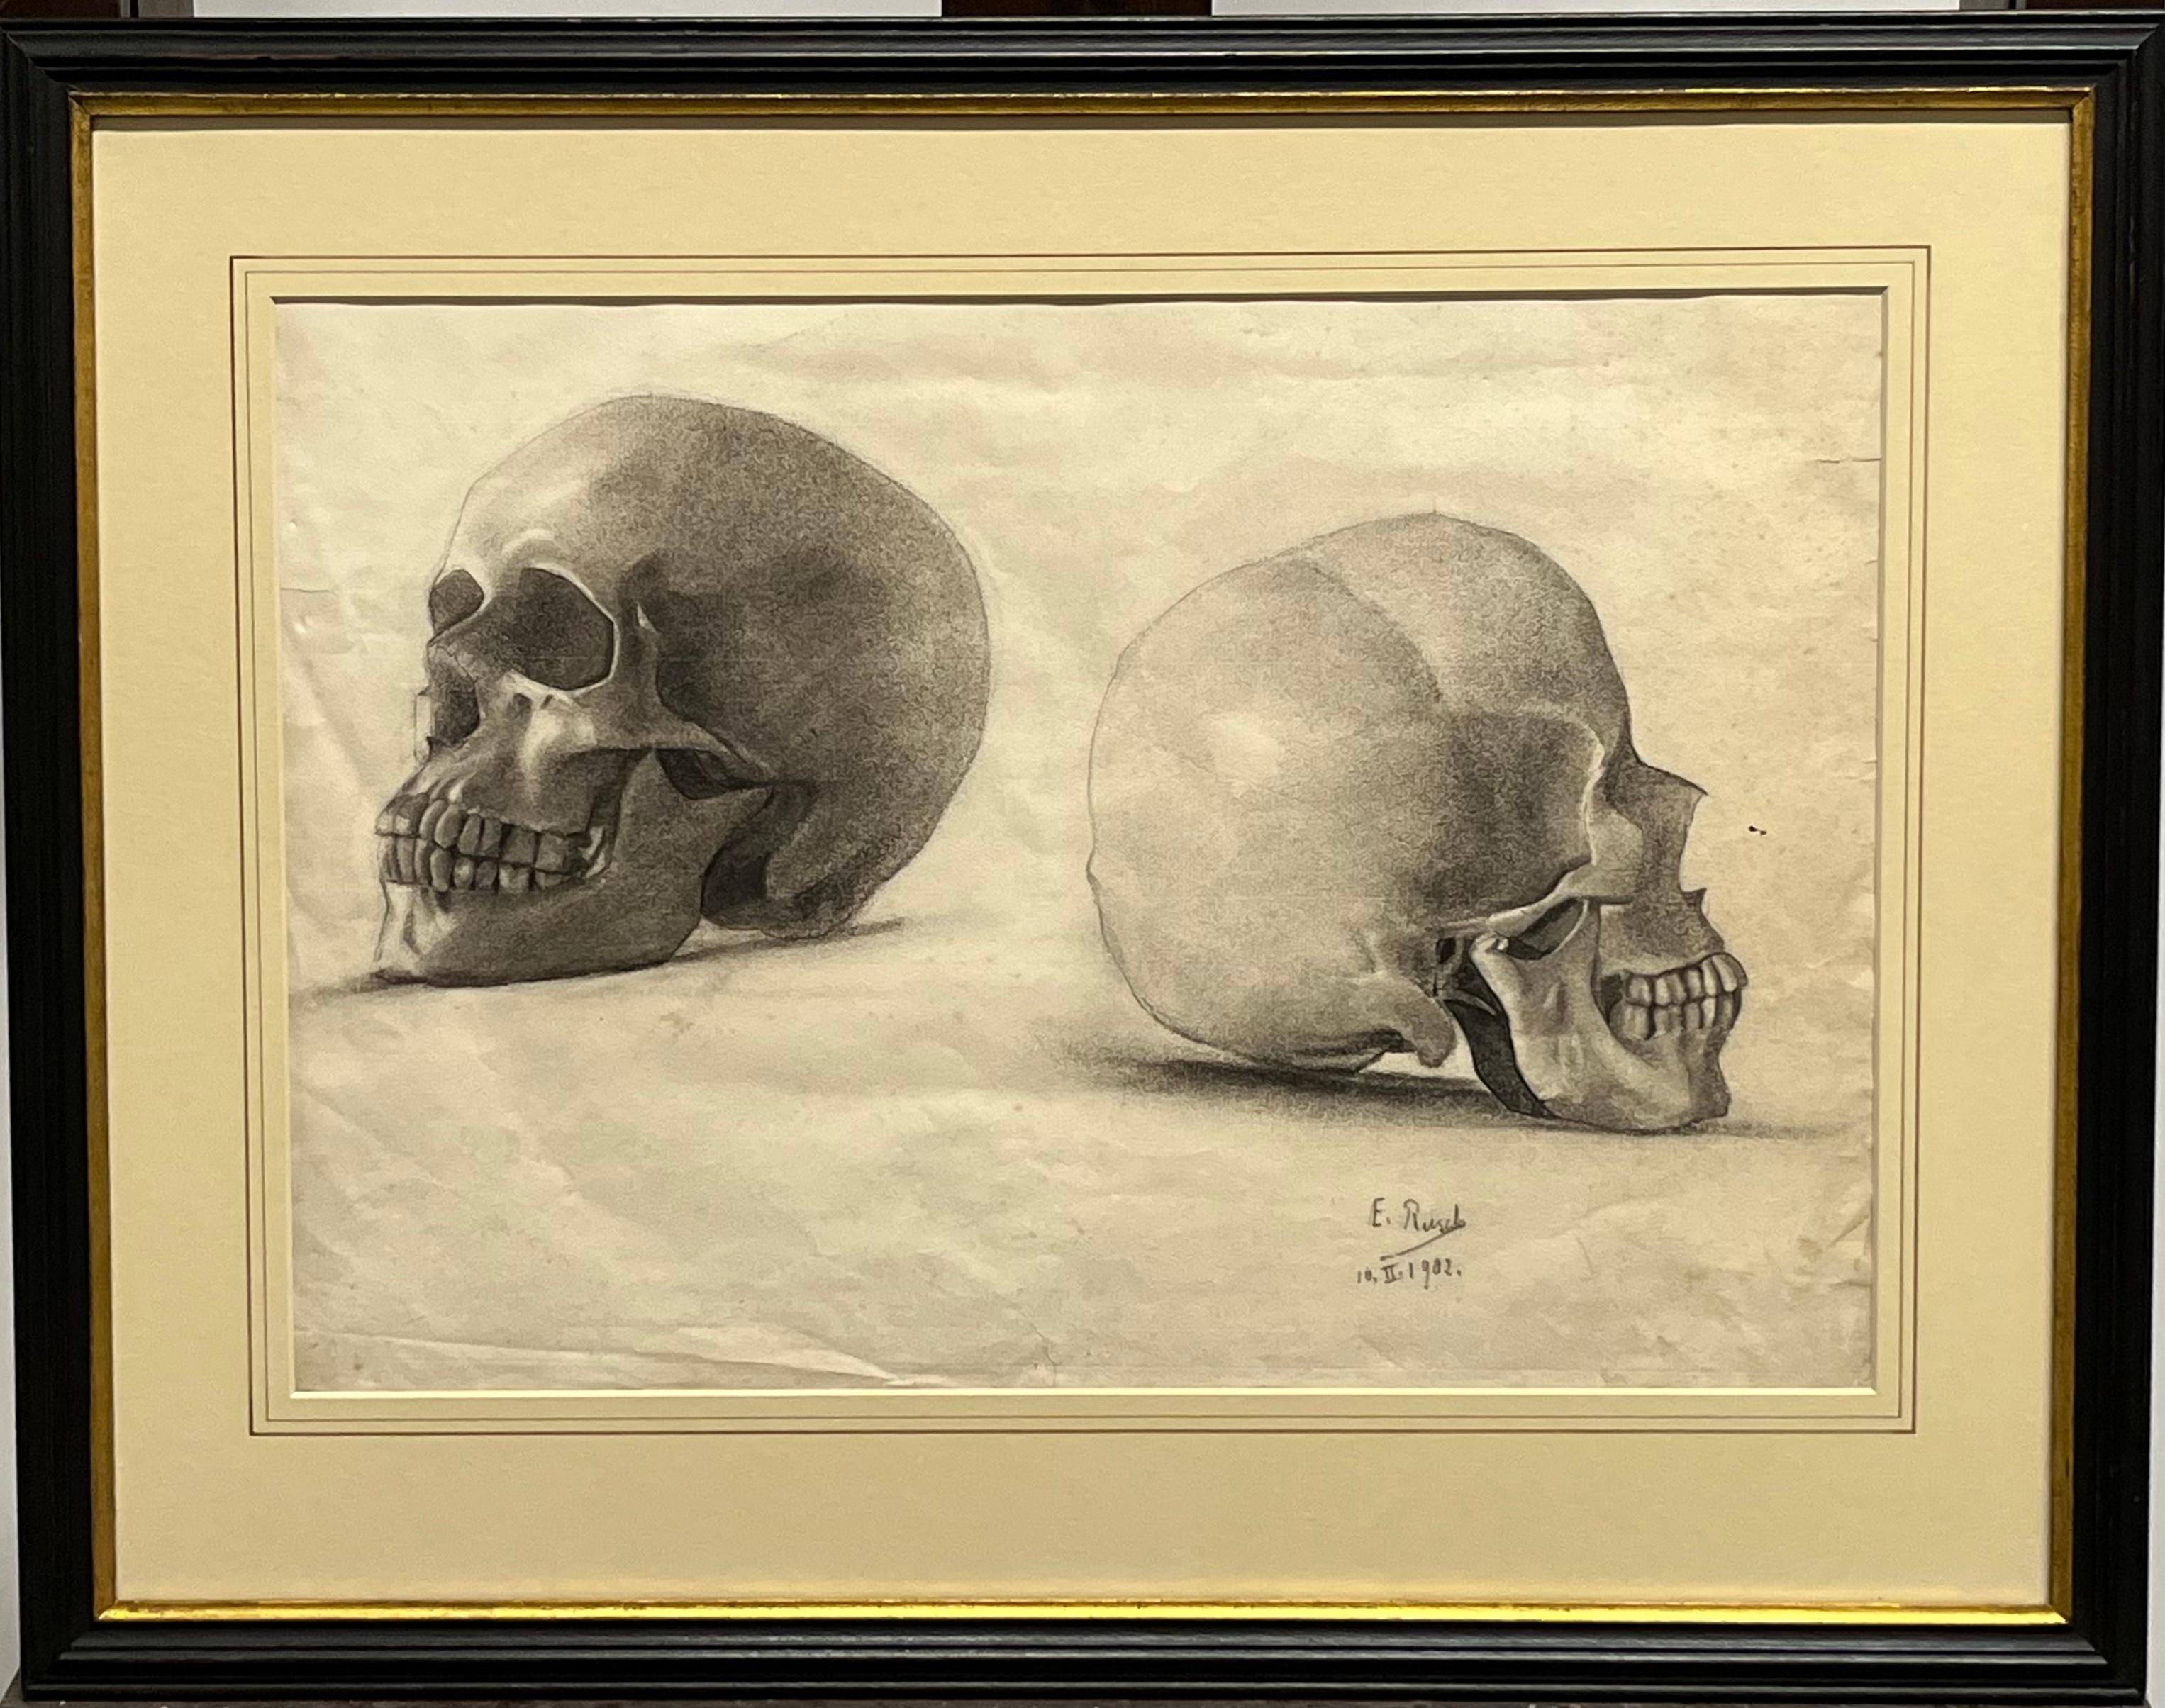 E. Rusch Portrait - Memento mori - A study of a Skull in two positions